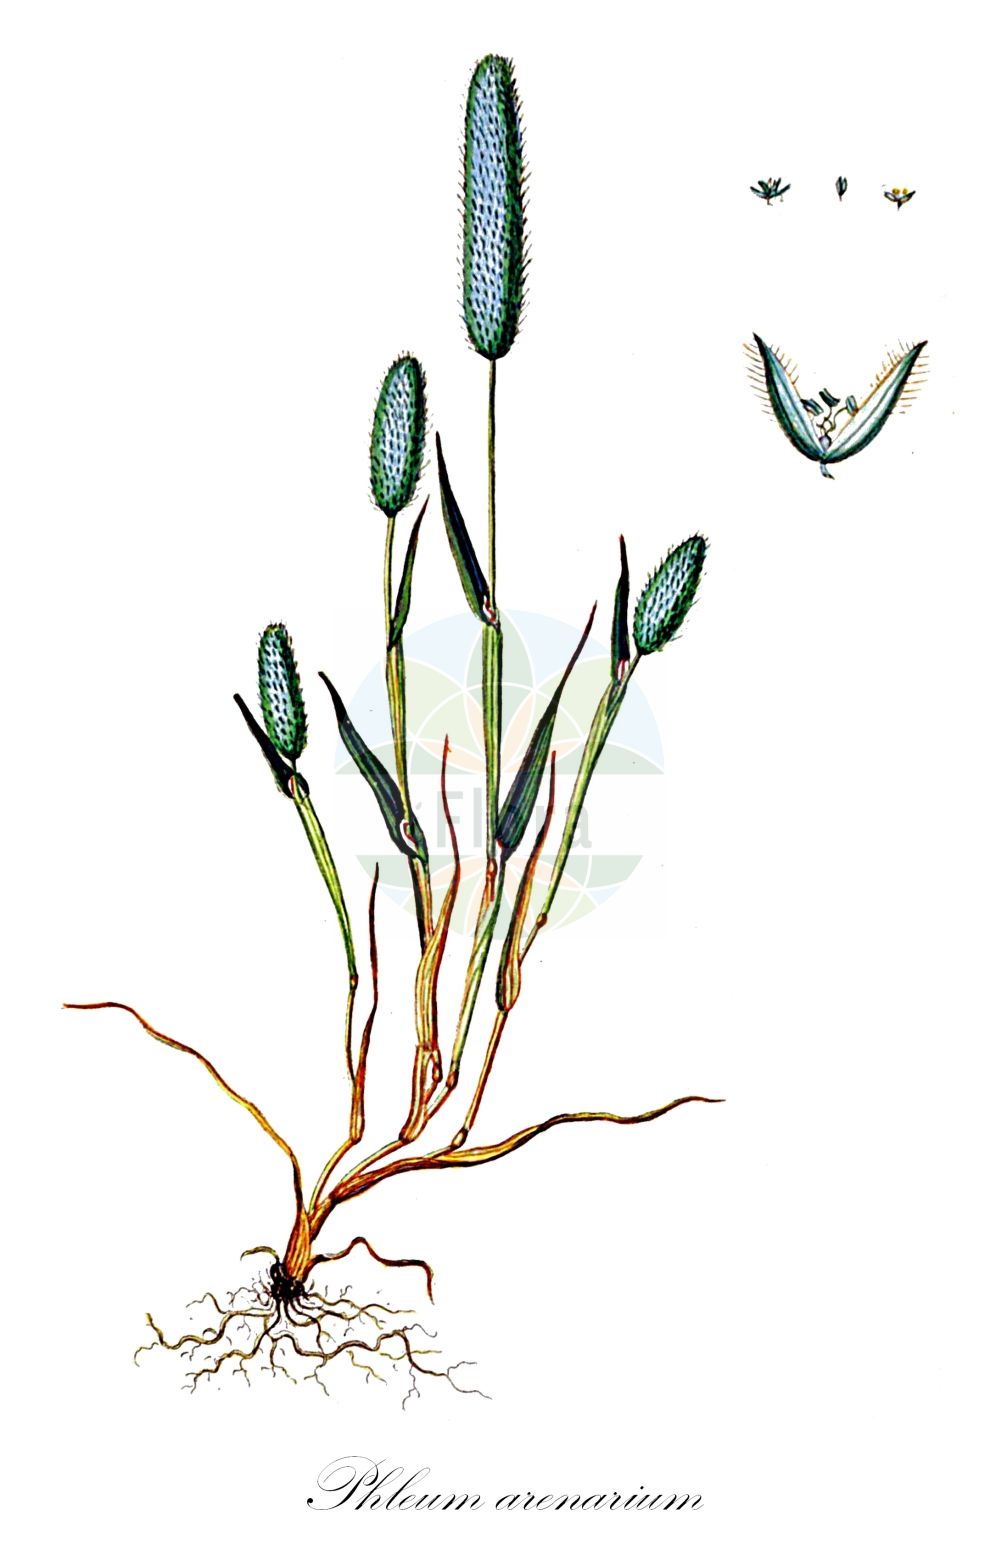 Historische Abbildung von Phleum arenarium (Sand-Lieschgras - Sand Cat's-tail). Das Bild zeigt Blatt, Bluete, Frucht und Same. ---- Historical Drawing of Phleum arenarium (Sand-Lieschgras - Sand Cat's-tail). The image is showing leaf, flower, fruit and seed.(Phleum arenarium,Sand-Lieschgras,Sand Cat's-tail,Phleum arenarium,Sand-Lieschgras,Sand Cat's-tail,Sand Timothy,Phleum,Lieschgras,Timothy,Poaceae,Süßgräser,Grass family,Blatt,Bluete,Frucht,Same,leaf,flower,fruit,seed,Oeder (1761-1883))